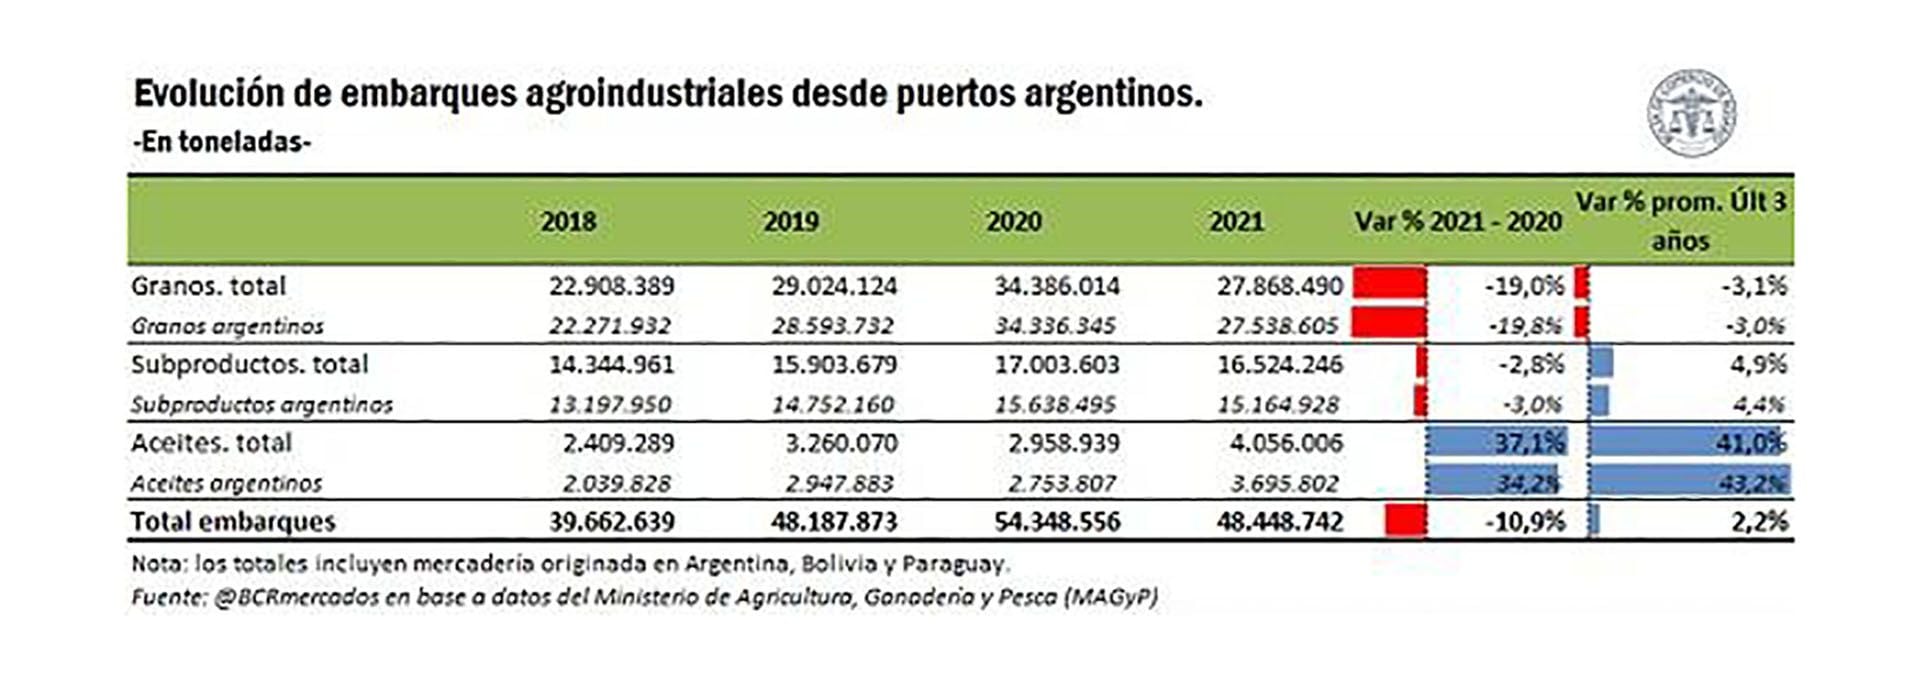 La evolución anual de los volúmenes exportados de granos y subproductos